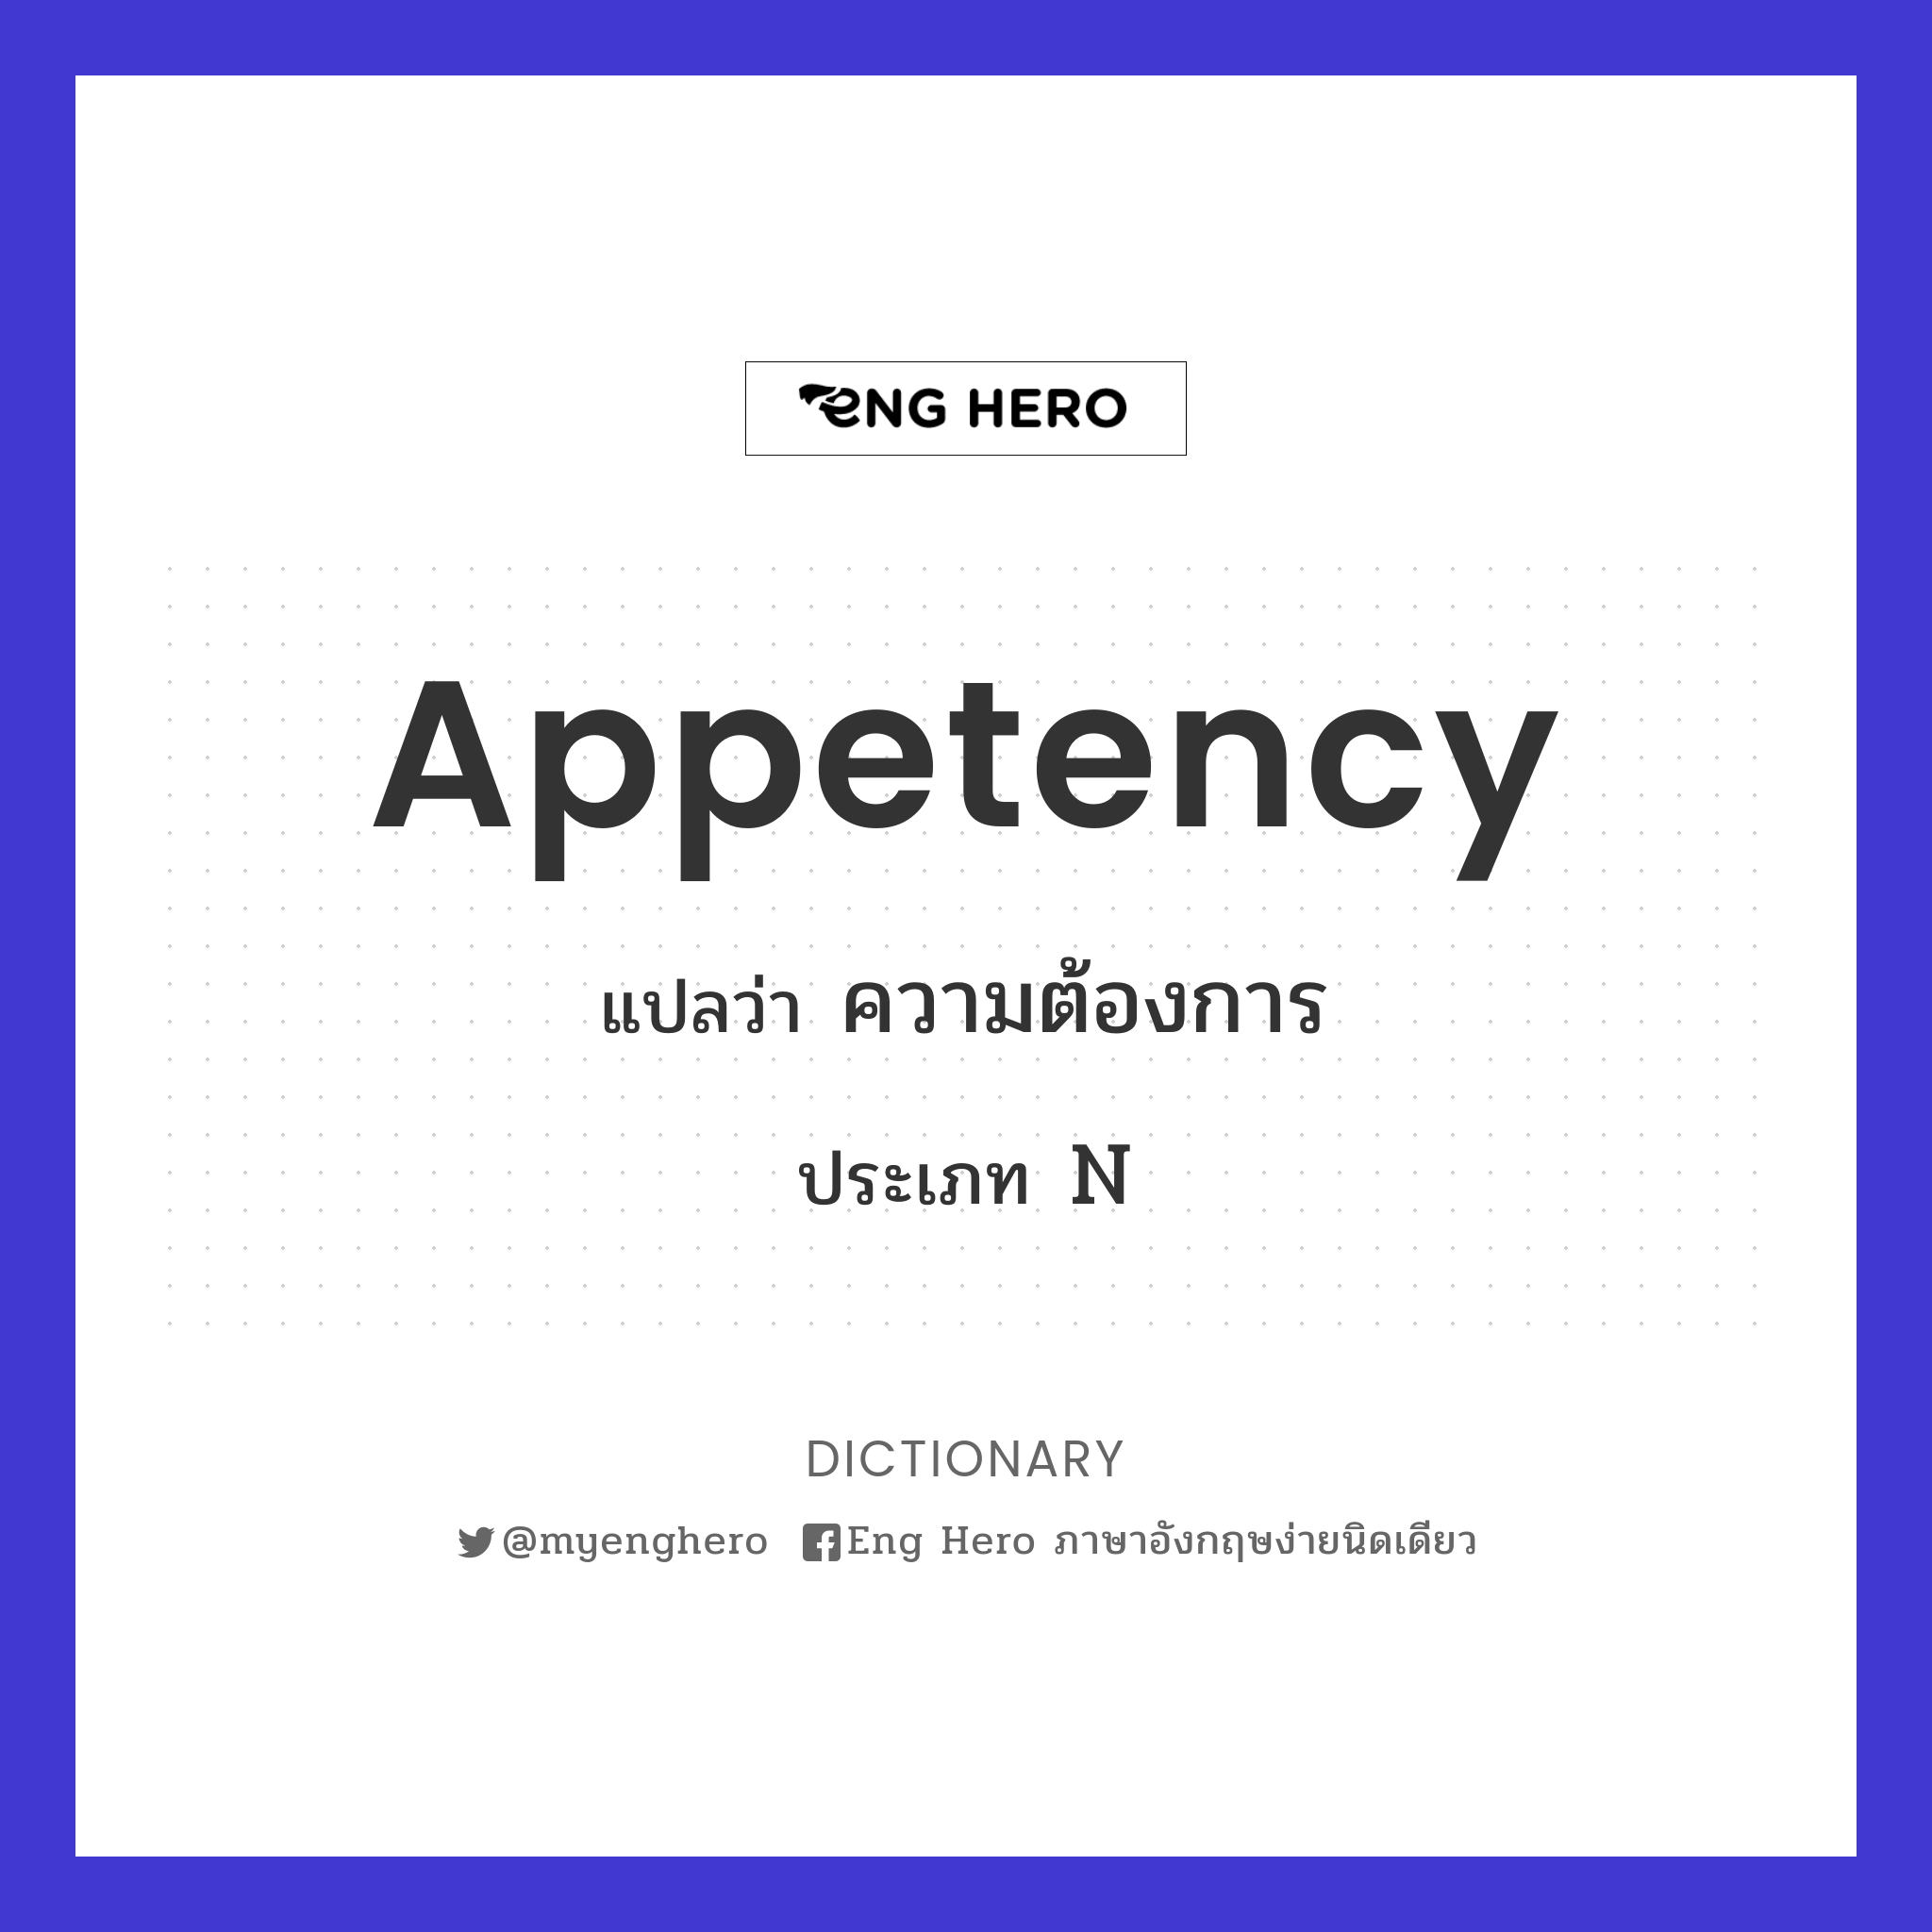 appetency